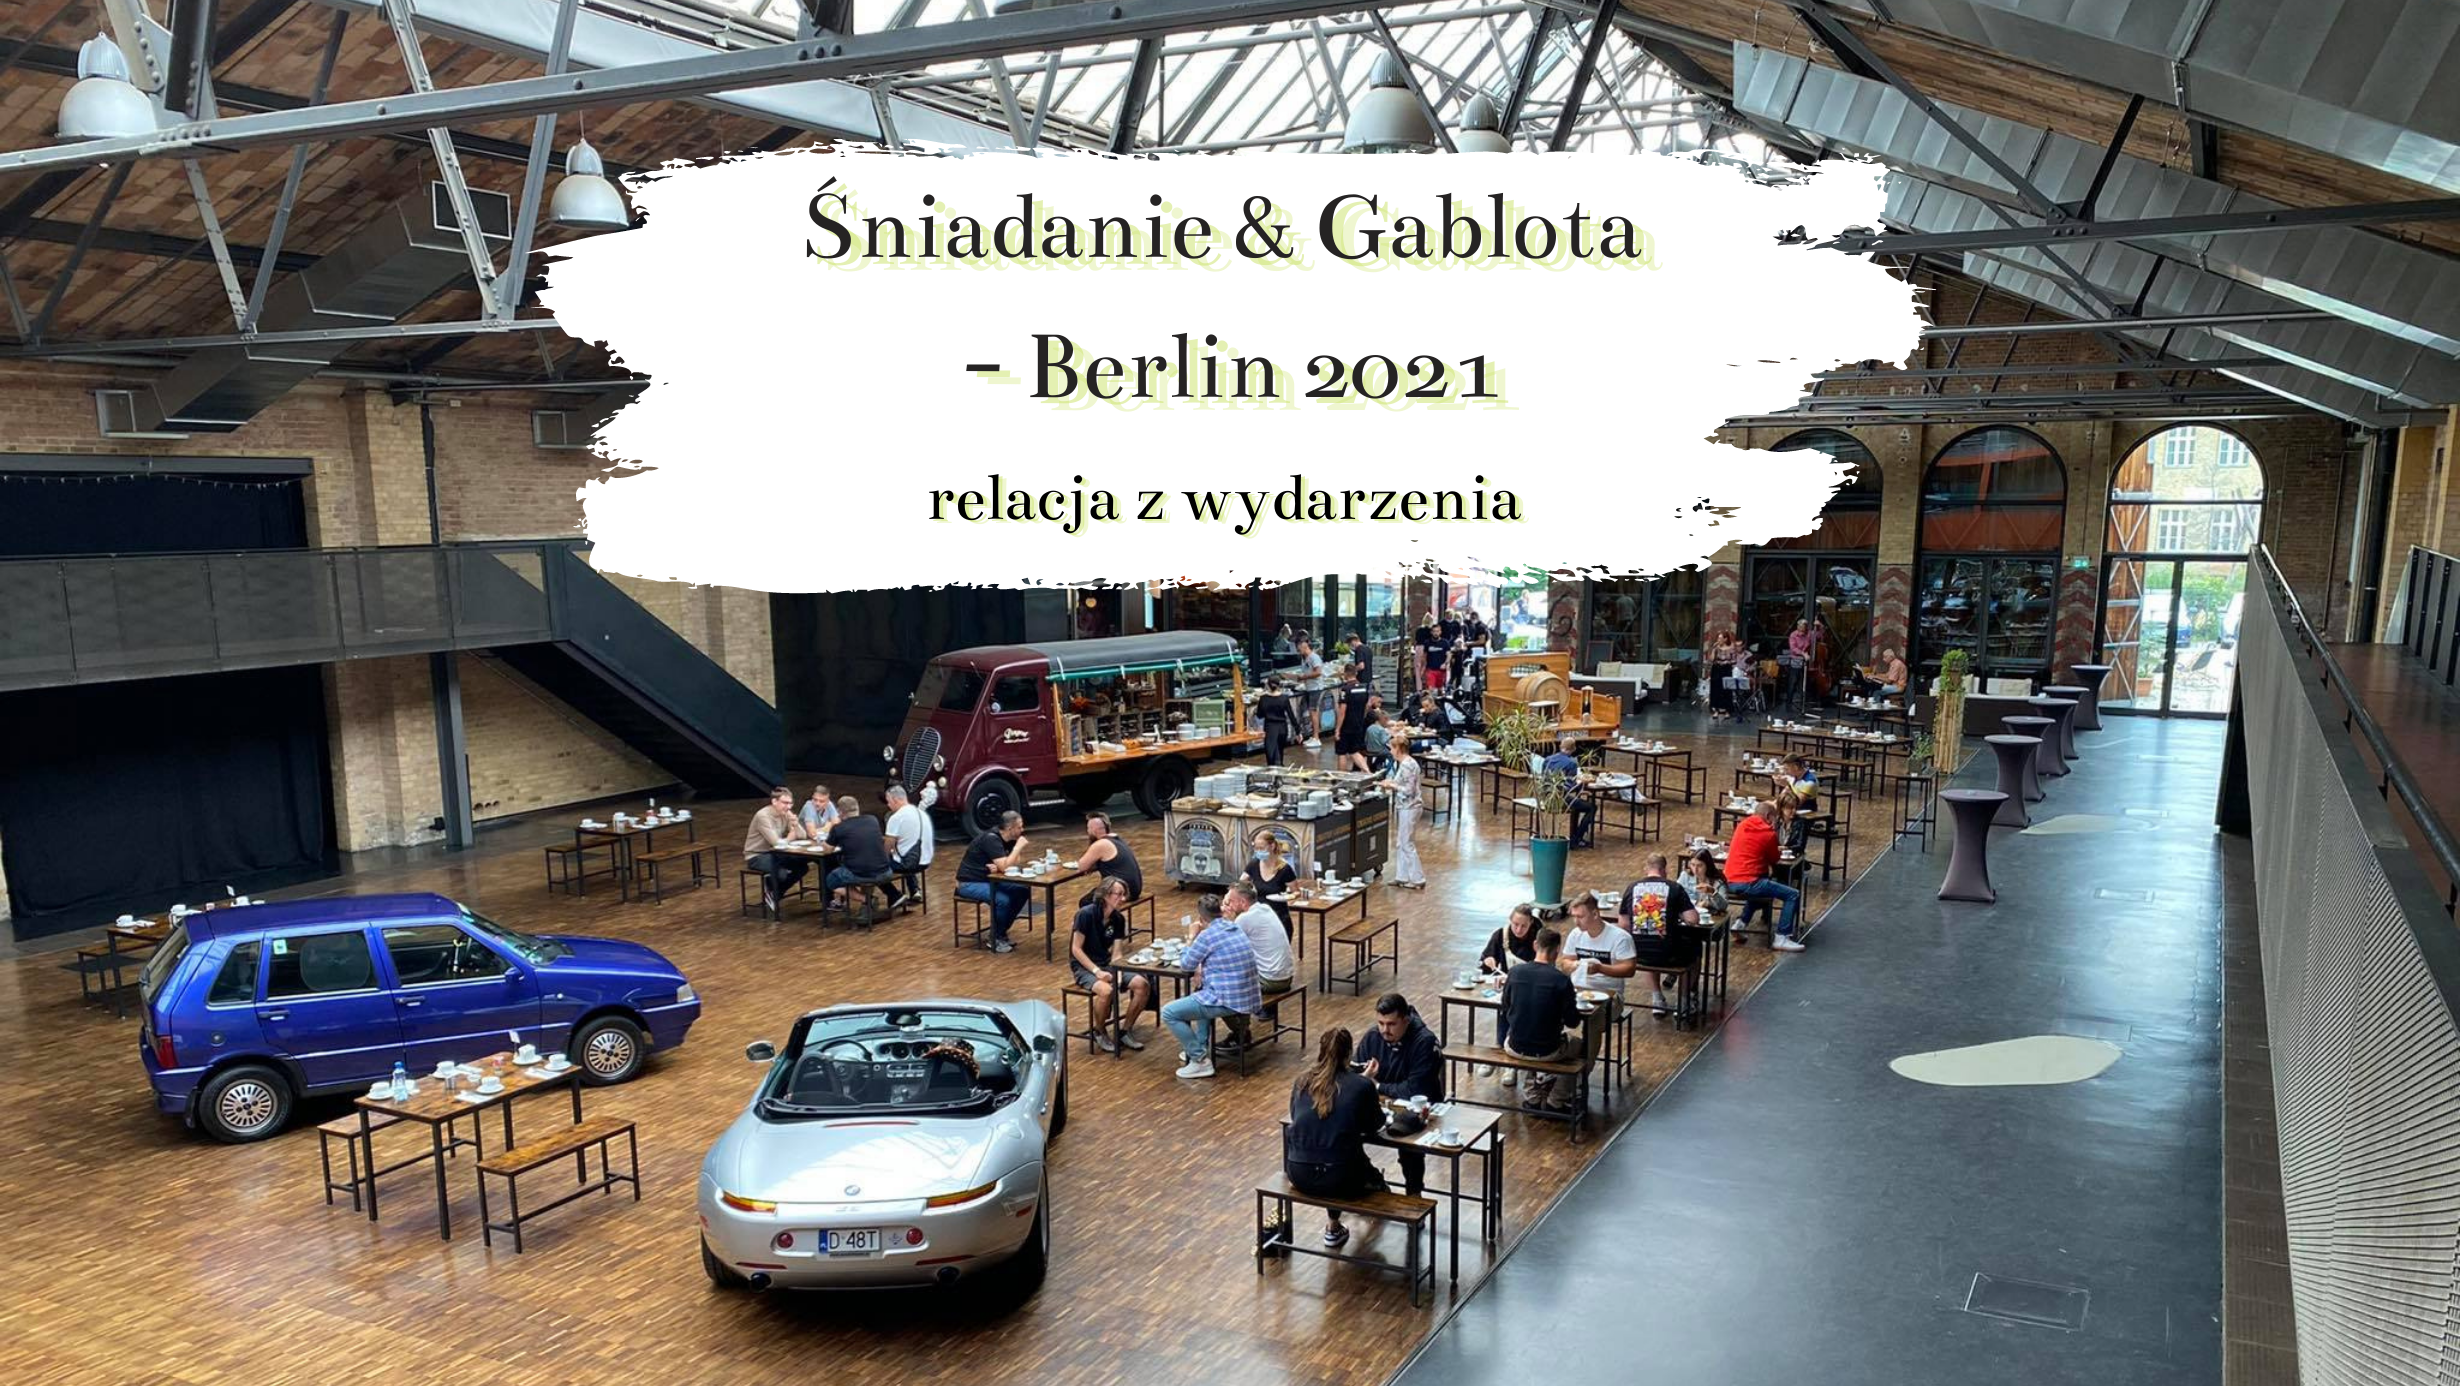 Śniadanie & Gablota – Berlin 2021, czyli spotkanie miłośników motoryzacji w starej zajezdni